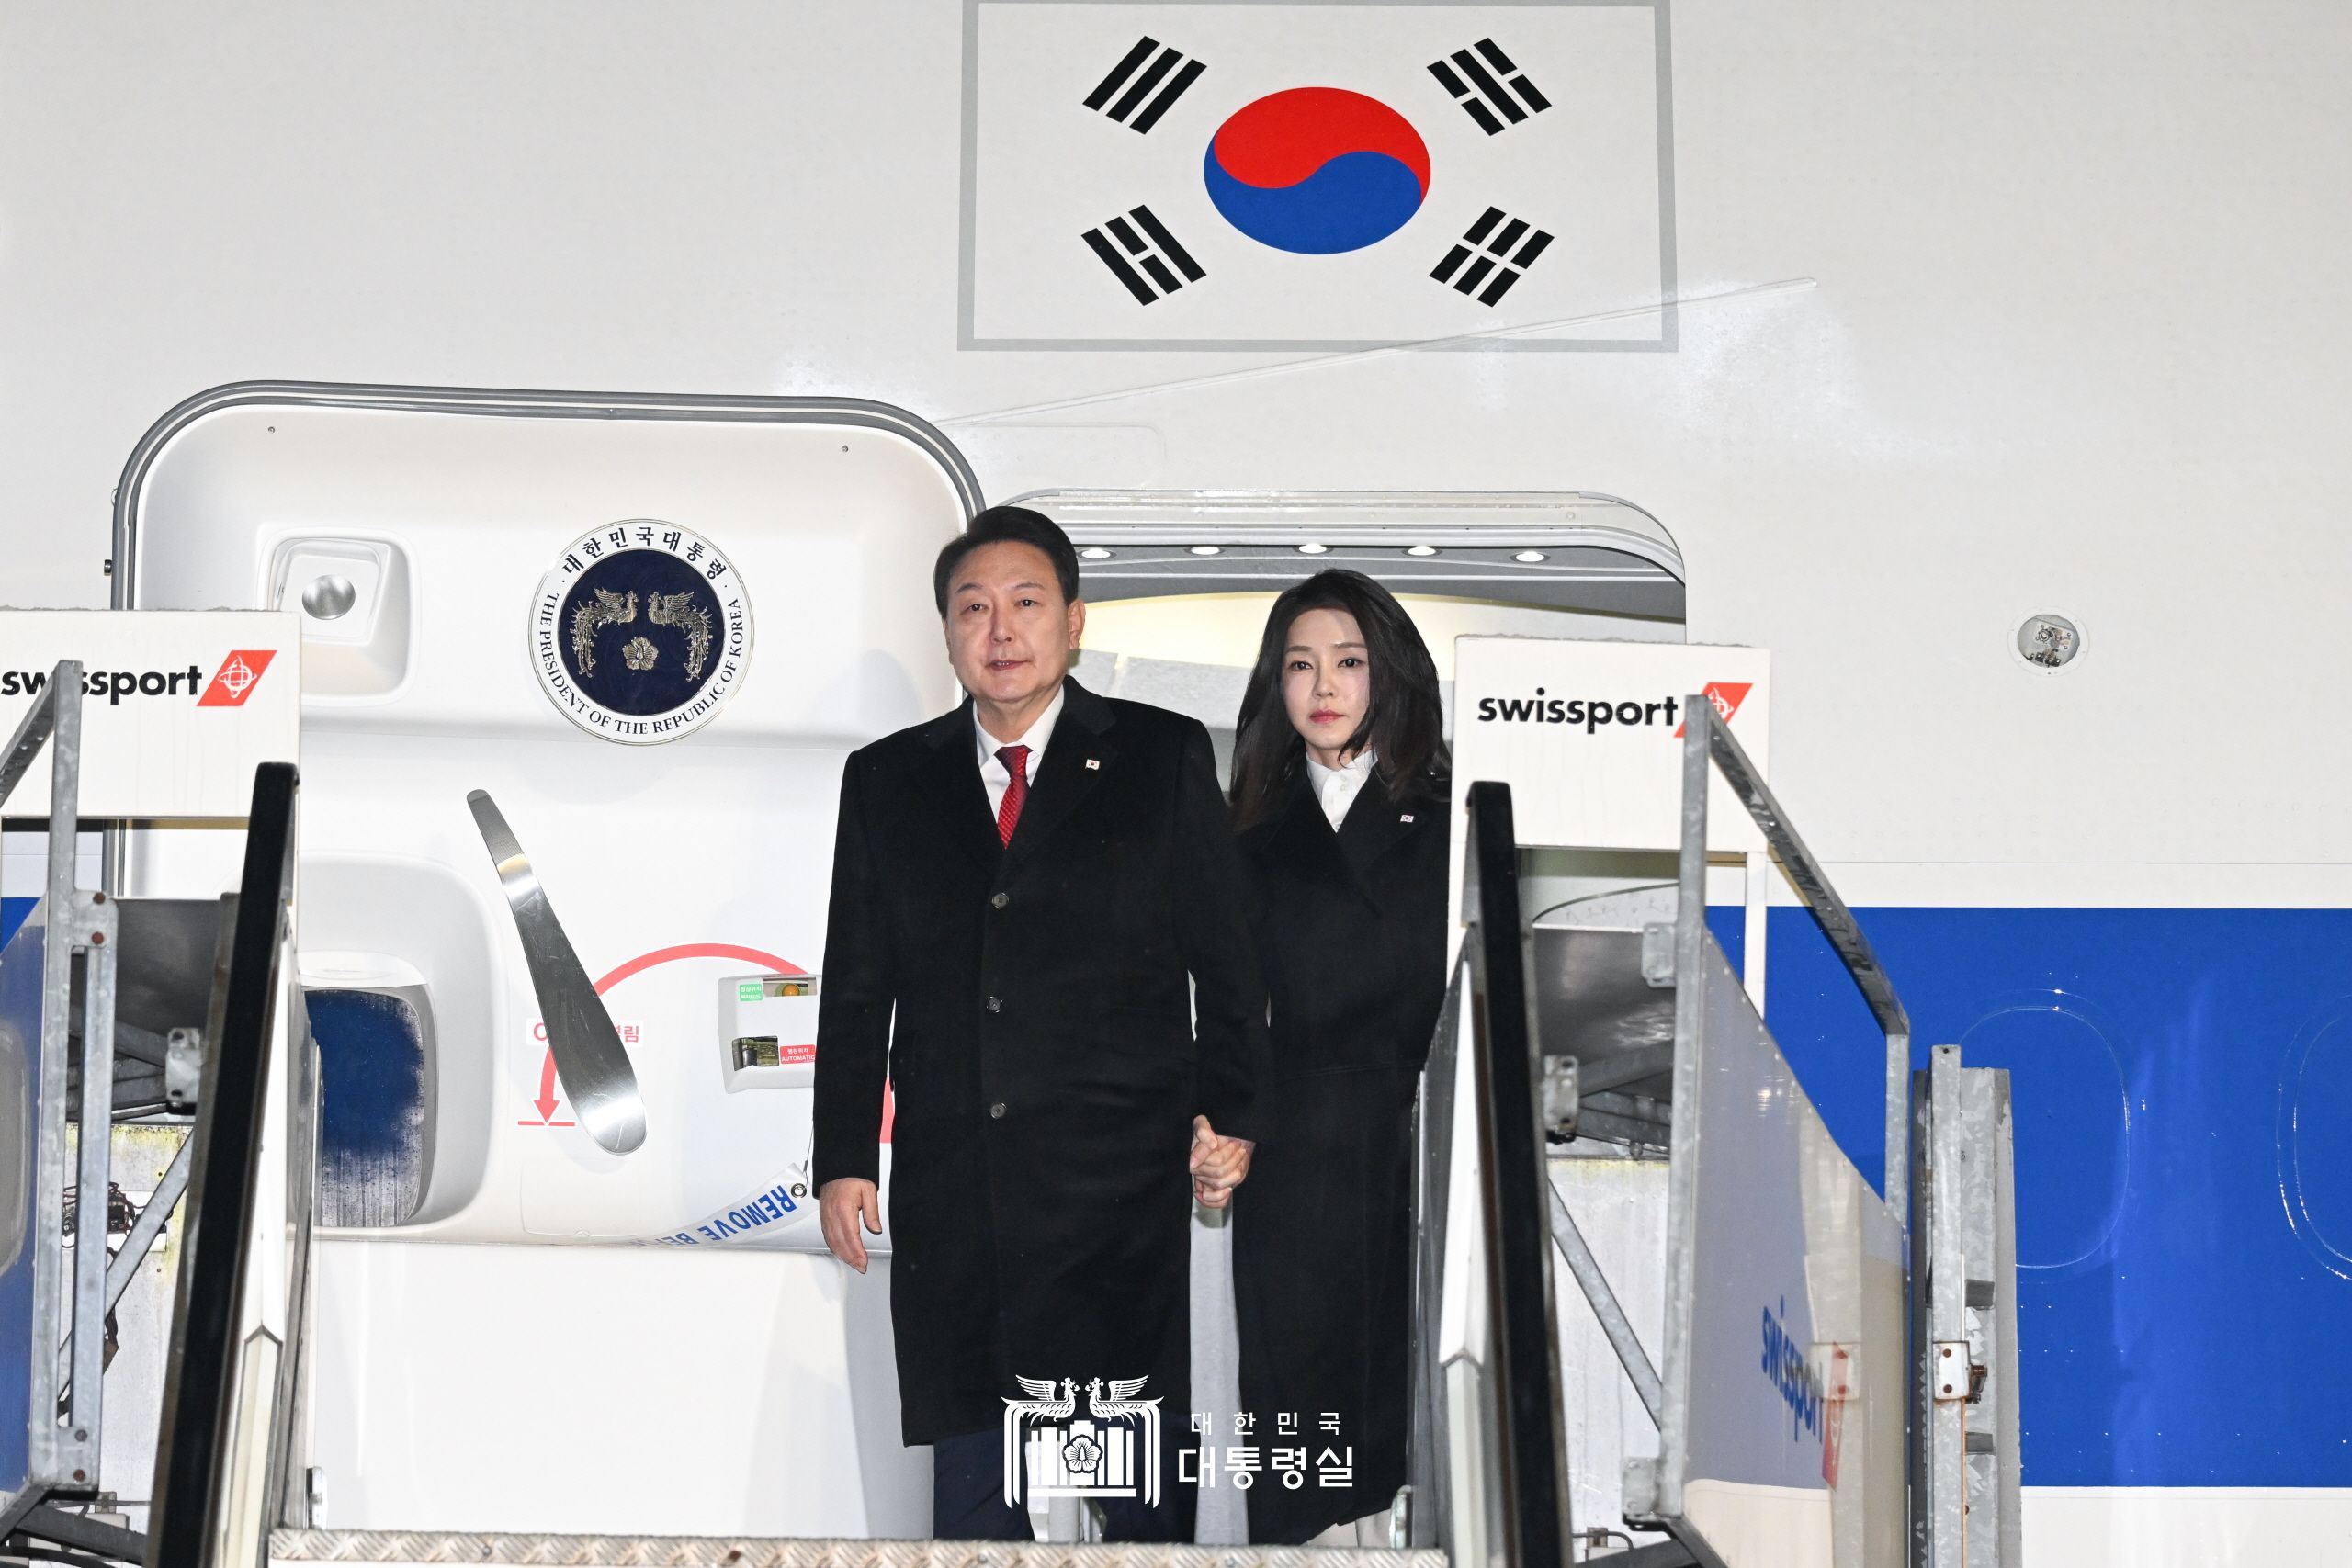 Президент РК Юн Сок Ёль вместе с супругой Ким Гон Хи 17 января (по местному времени) выходят из президентского самолета, прибывшего в международный аэропорт Цюриха. / Фото: Канцелярия президента РК